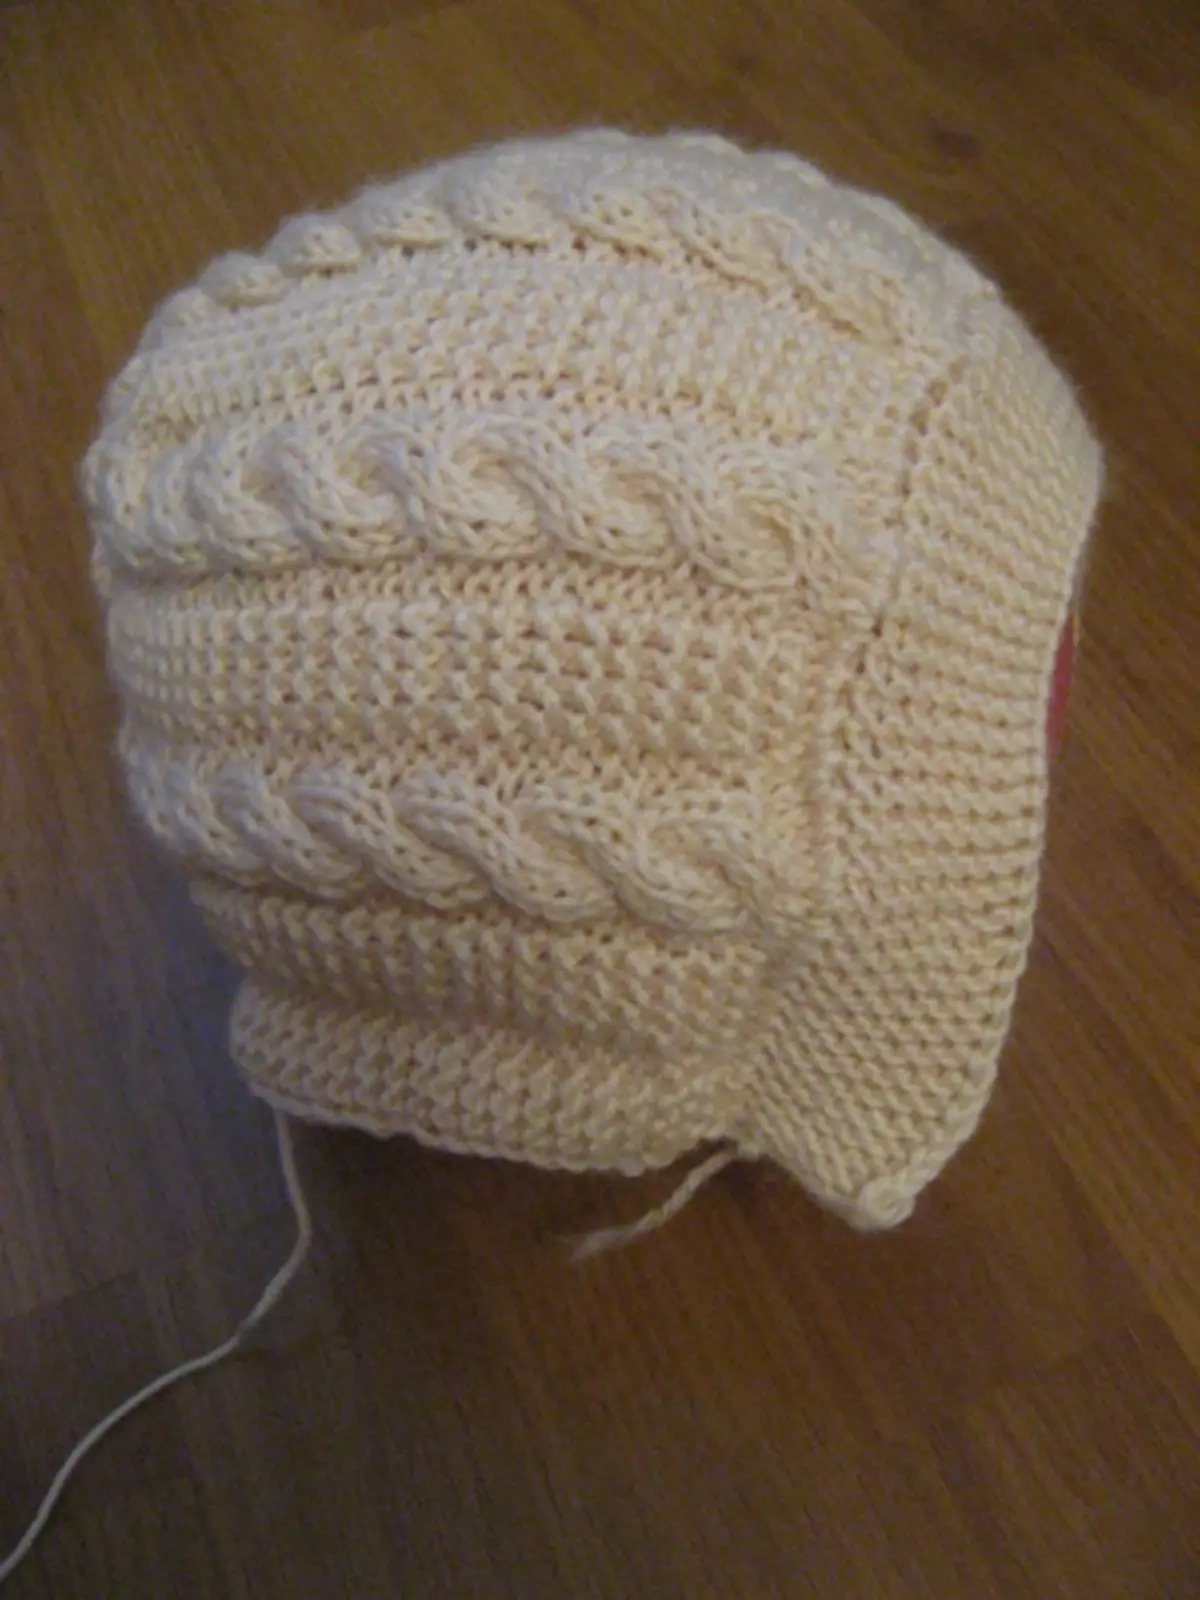 Sombrero de invierno para niñas con agujas de tejer: esquemas con una descripción del tejido del accesorio de otoño y los cascos de sombreros